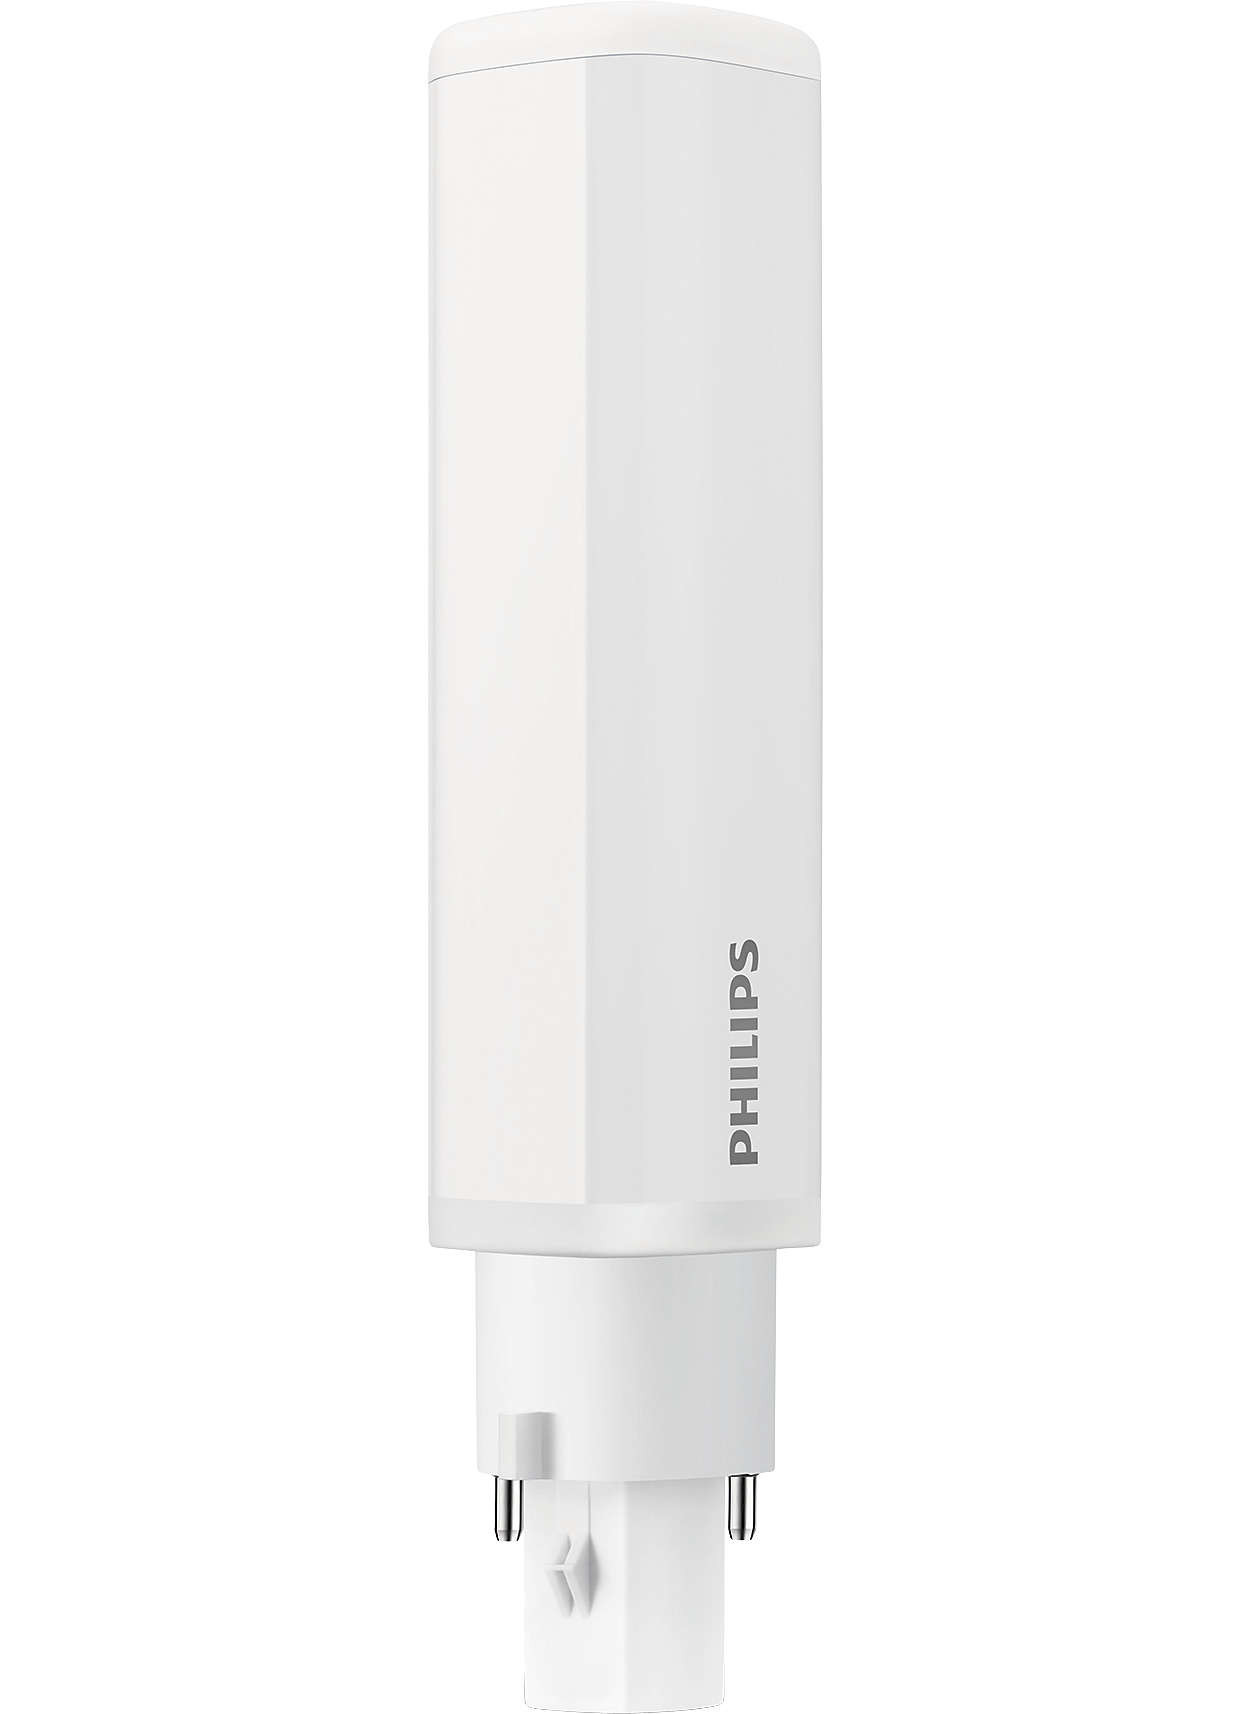 Philips CorePro LED PLC 6.5W 840 2P G24d-2